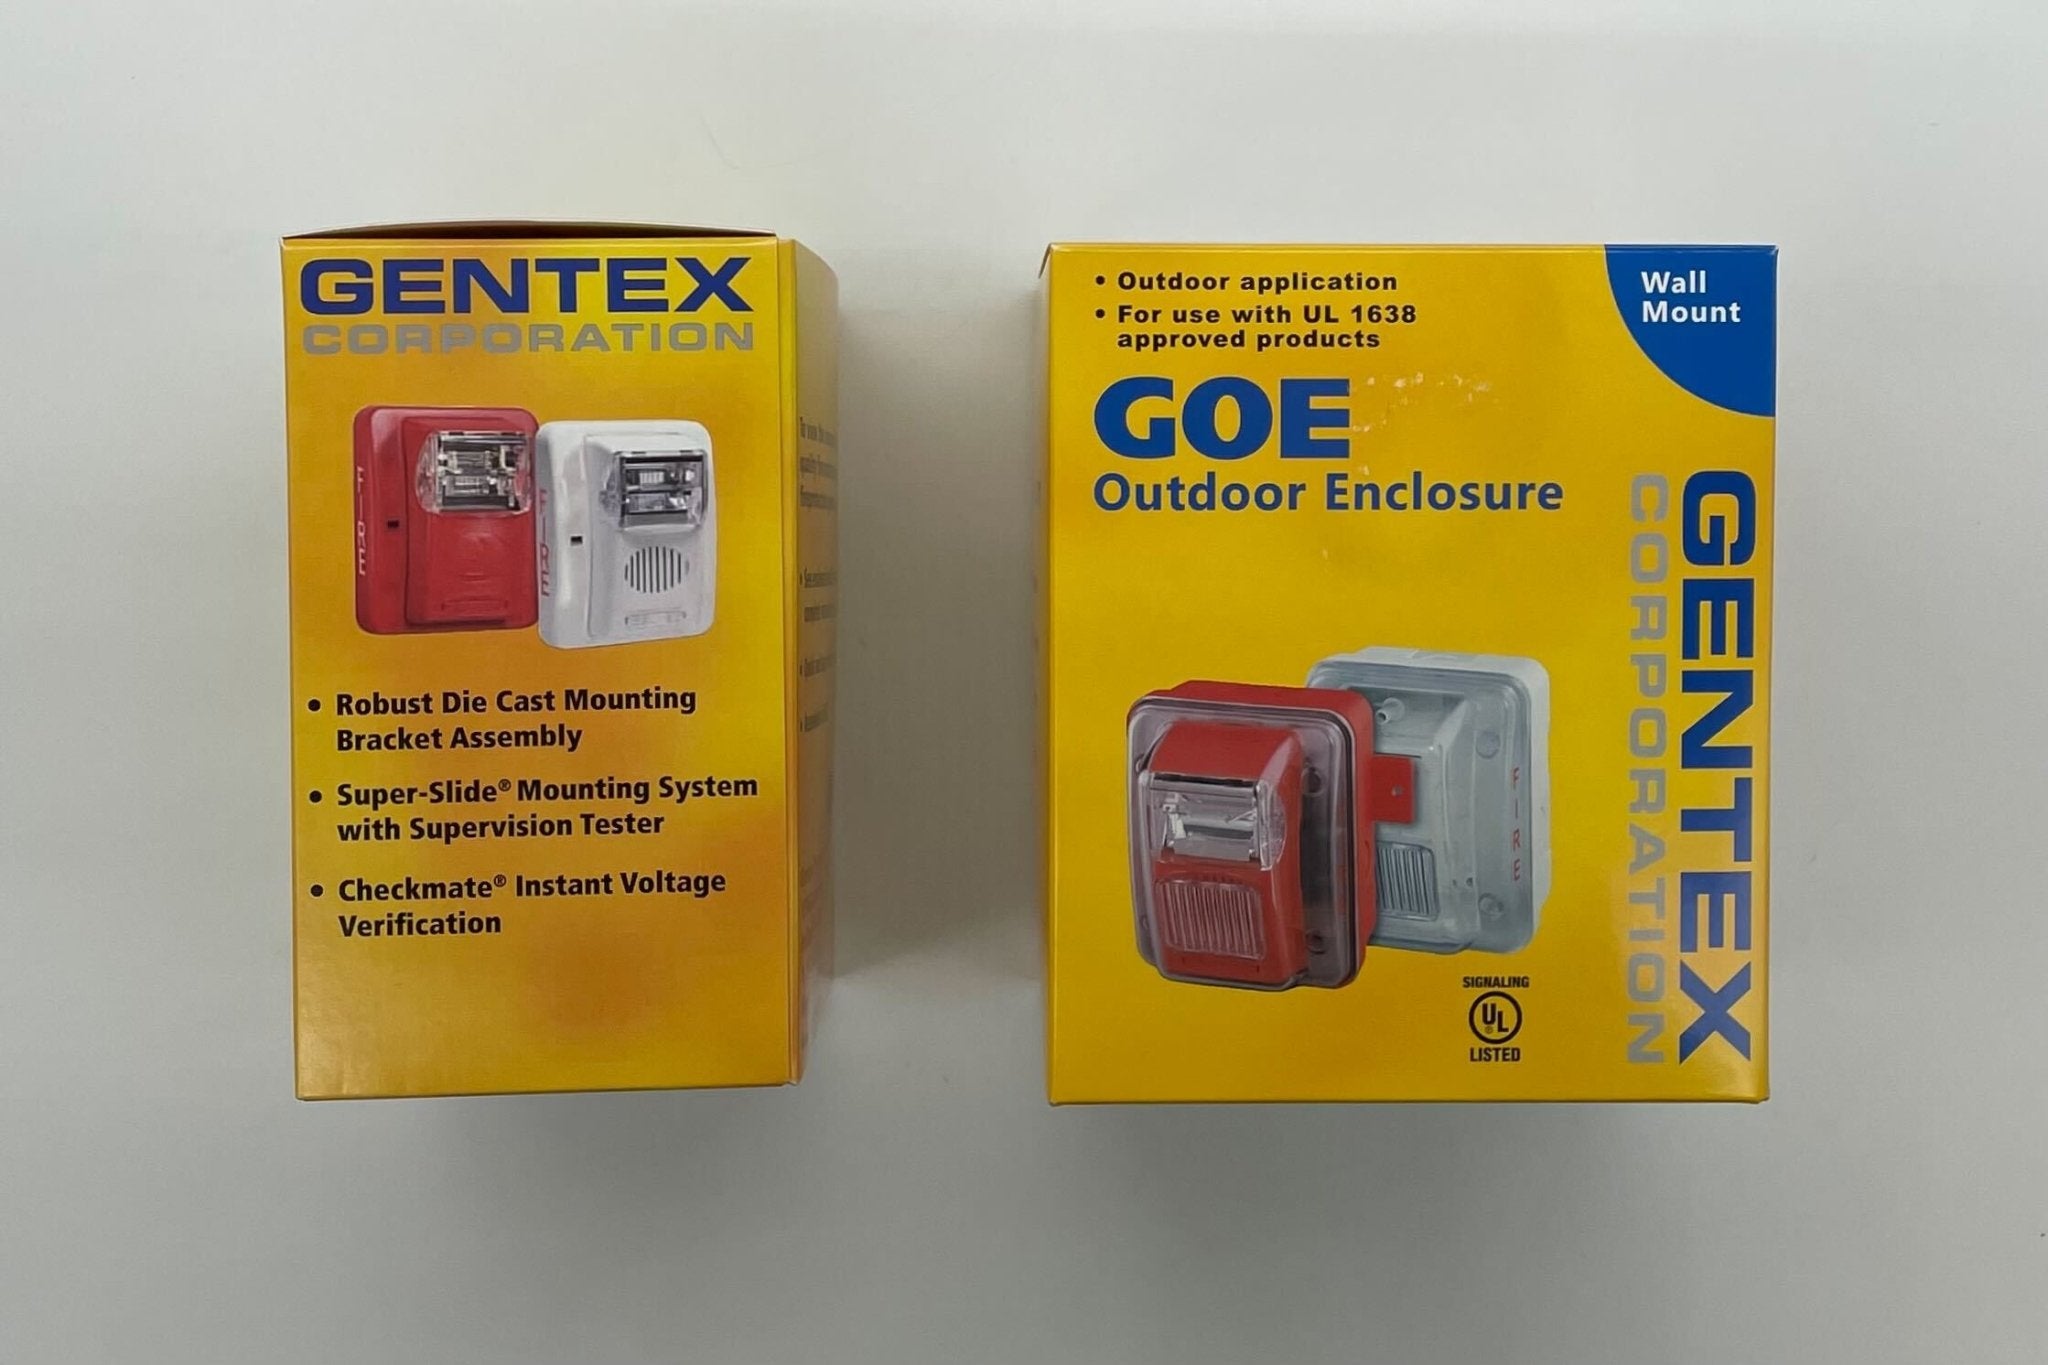 Gentex WGEC24-75WR Weatherproof Horn Strobe - The Fire Alarm Supplier